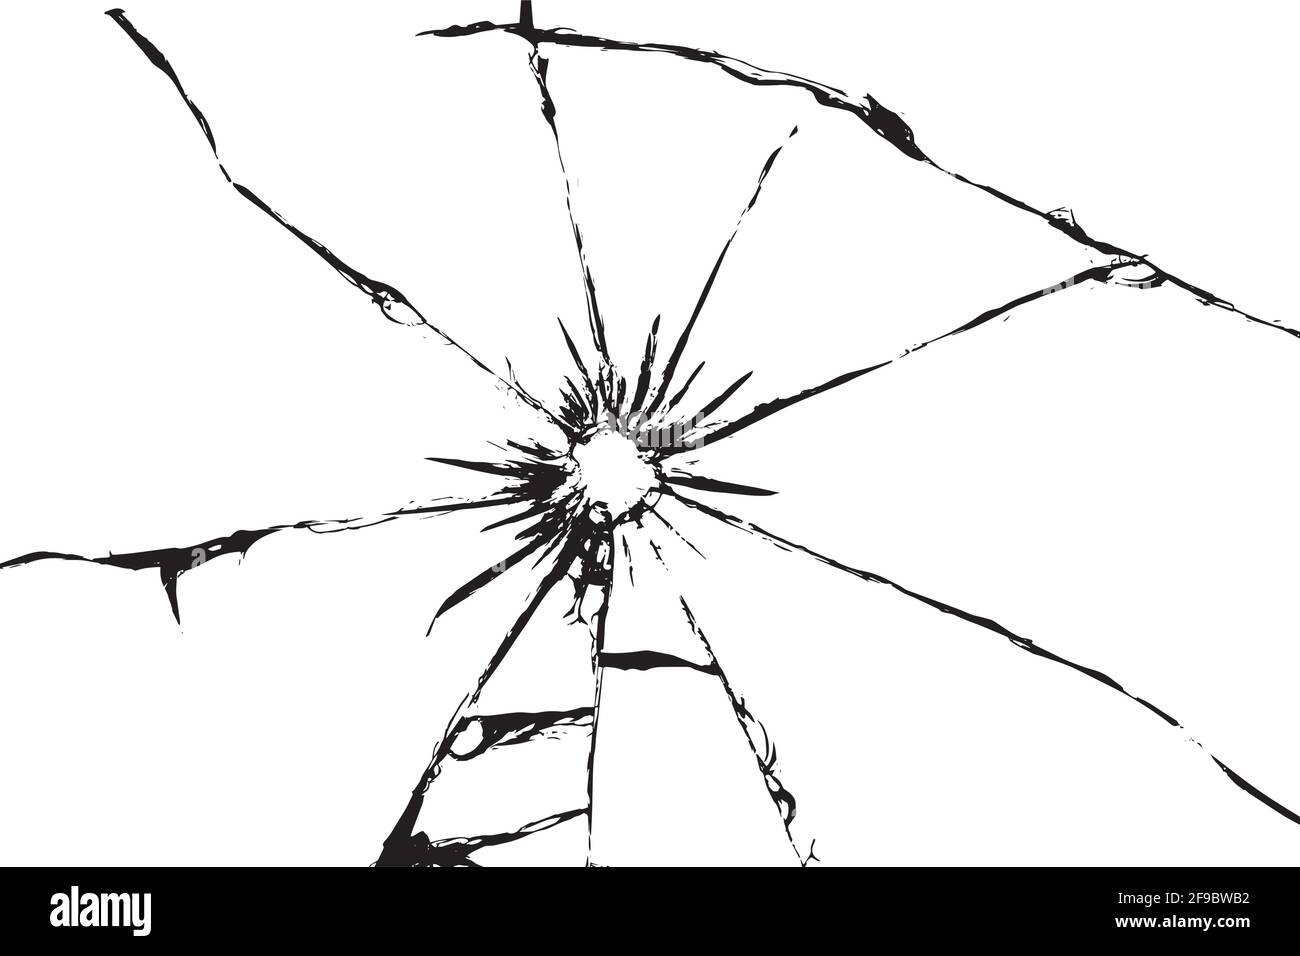 Verre endommagé présentant des fissures, fissures dans le verre résultant de la grenaille. Fenêtre cassée, texture sur fond blanc Illustration de Vecteur